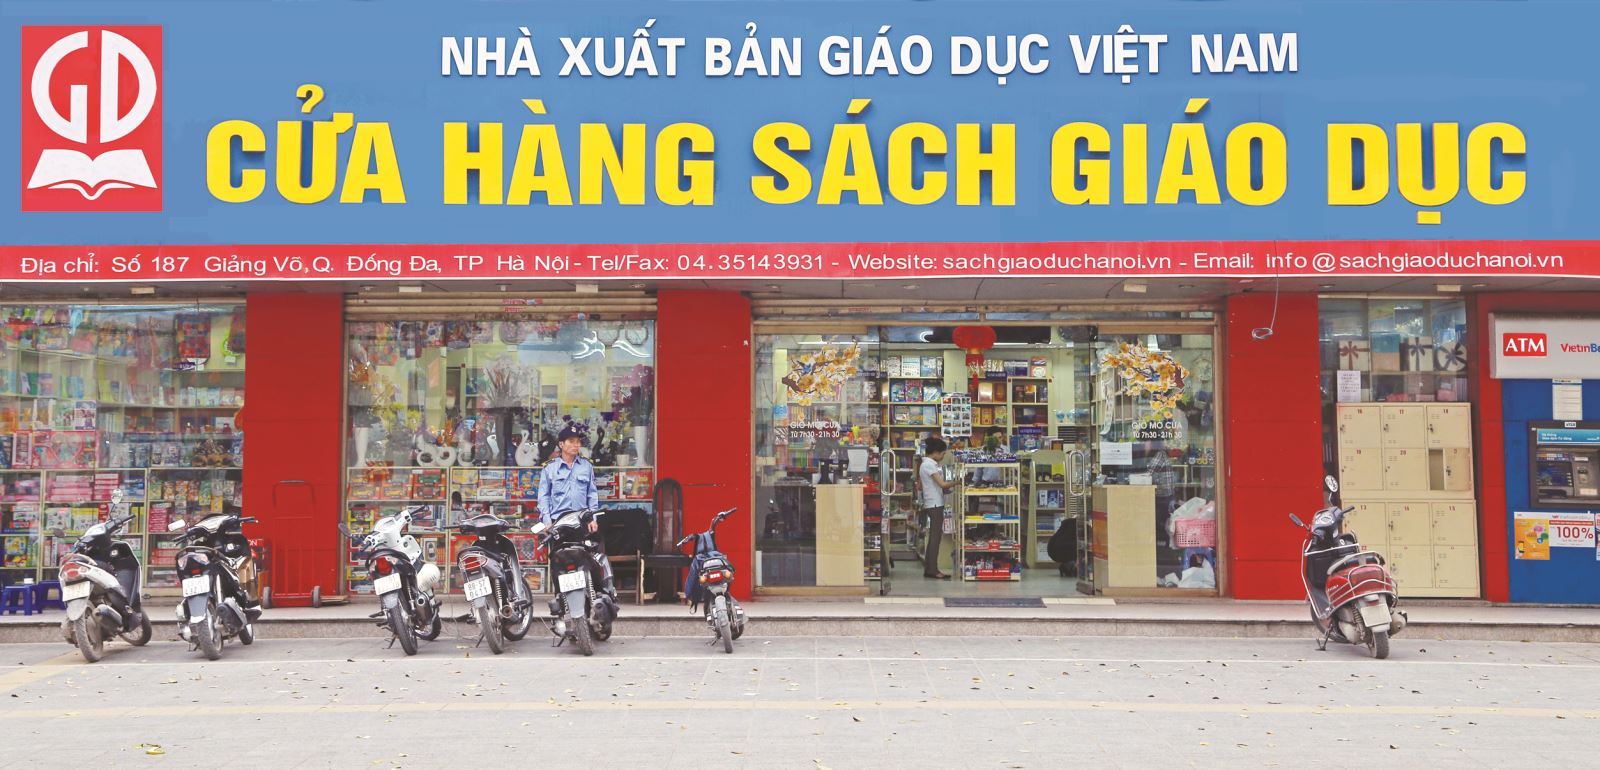 NXB Giáo dục Việt Nam sẽ đảm bảo đủ sách giáo khoa lớp 6 